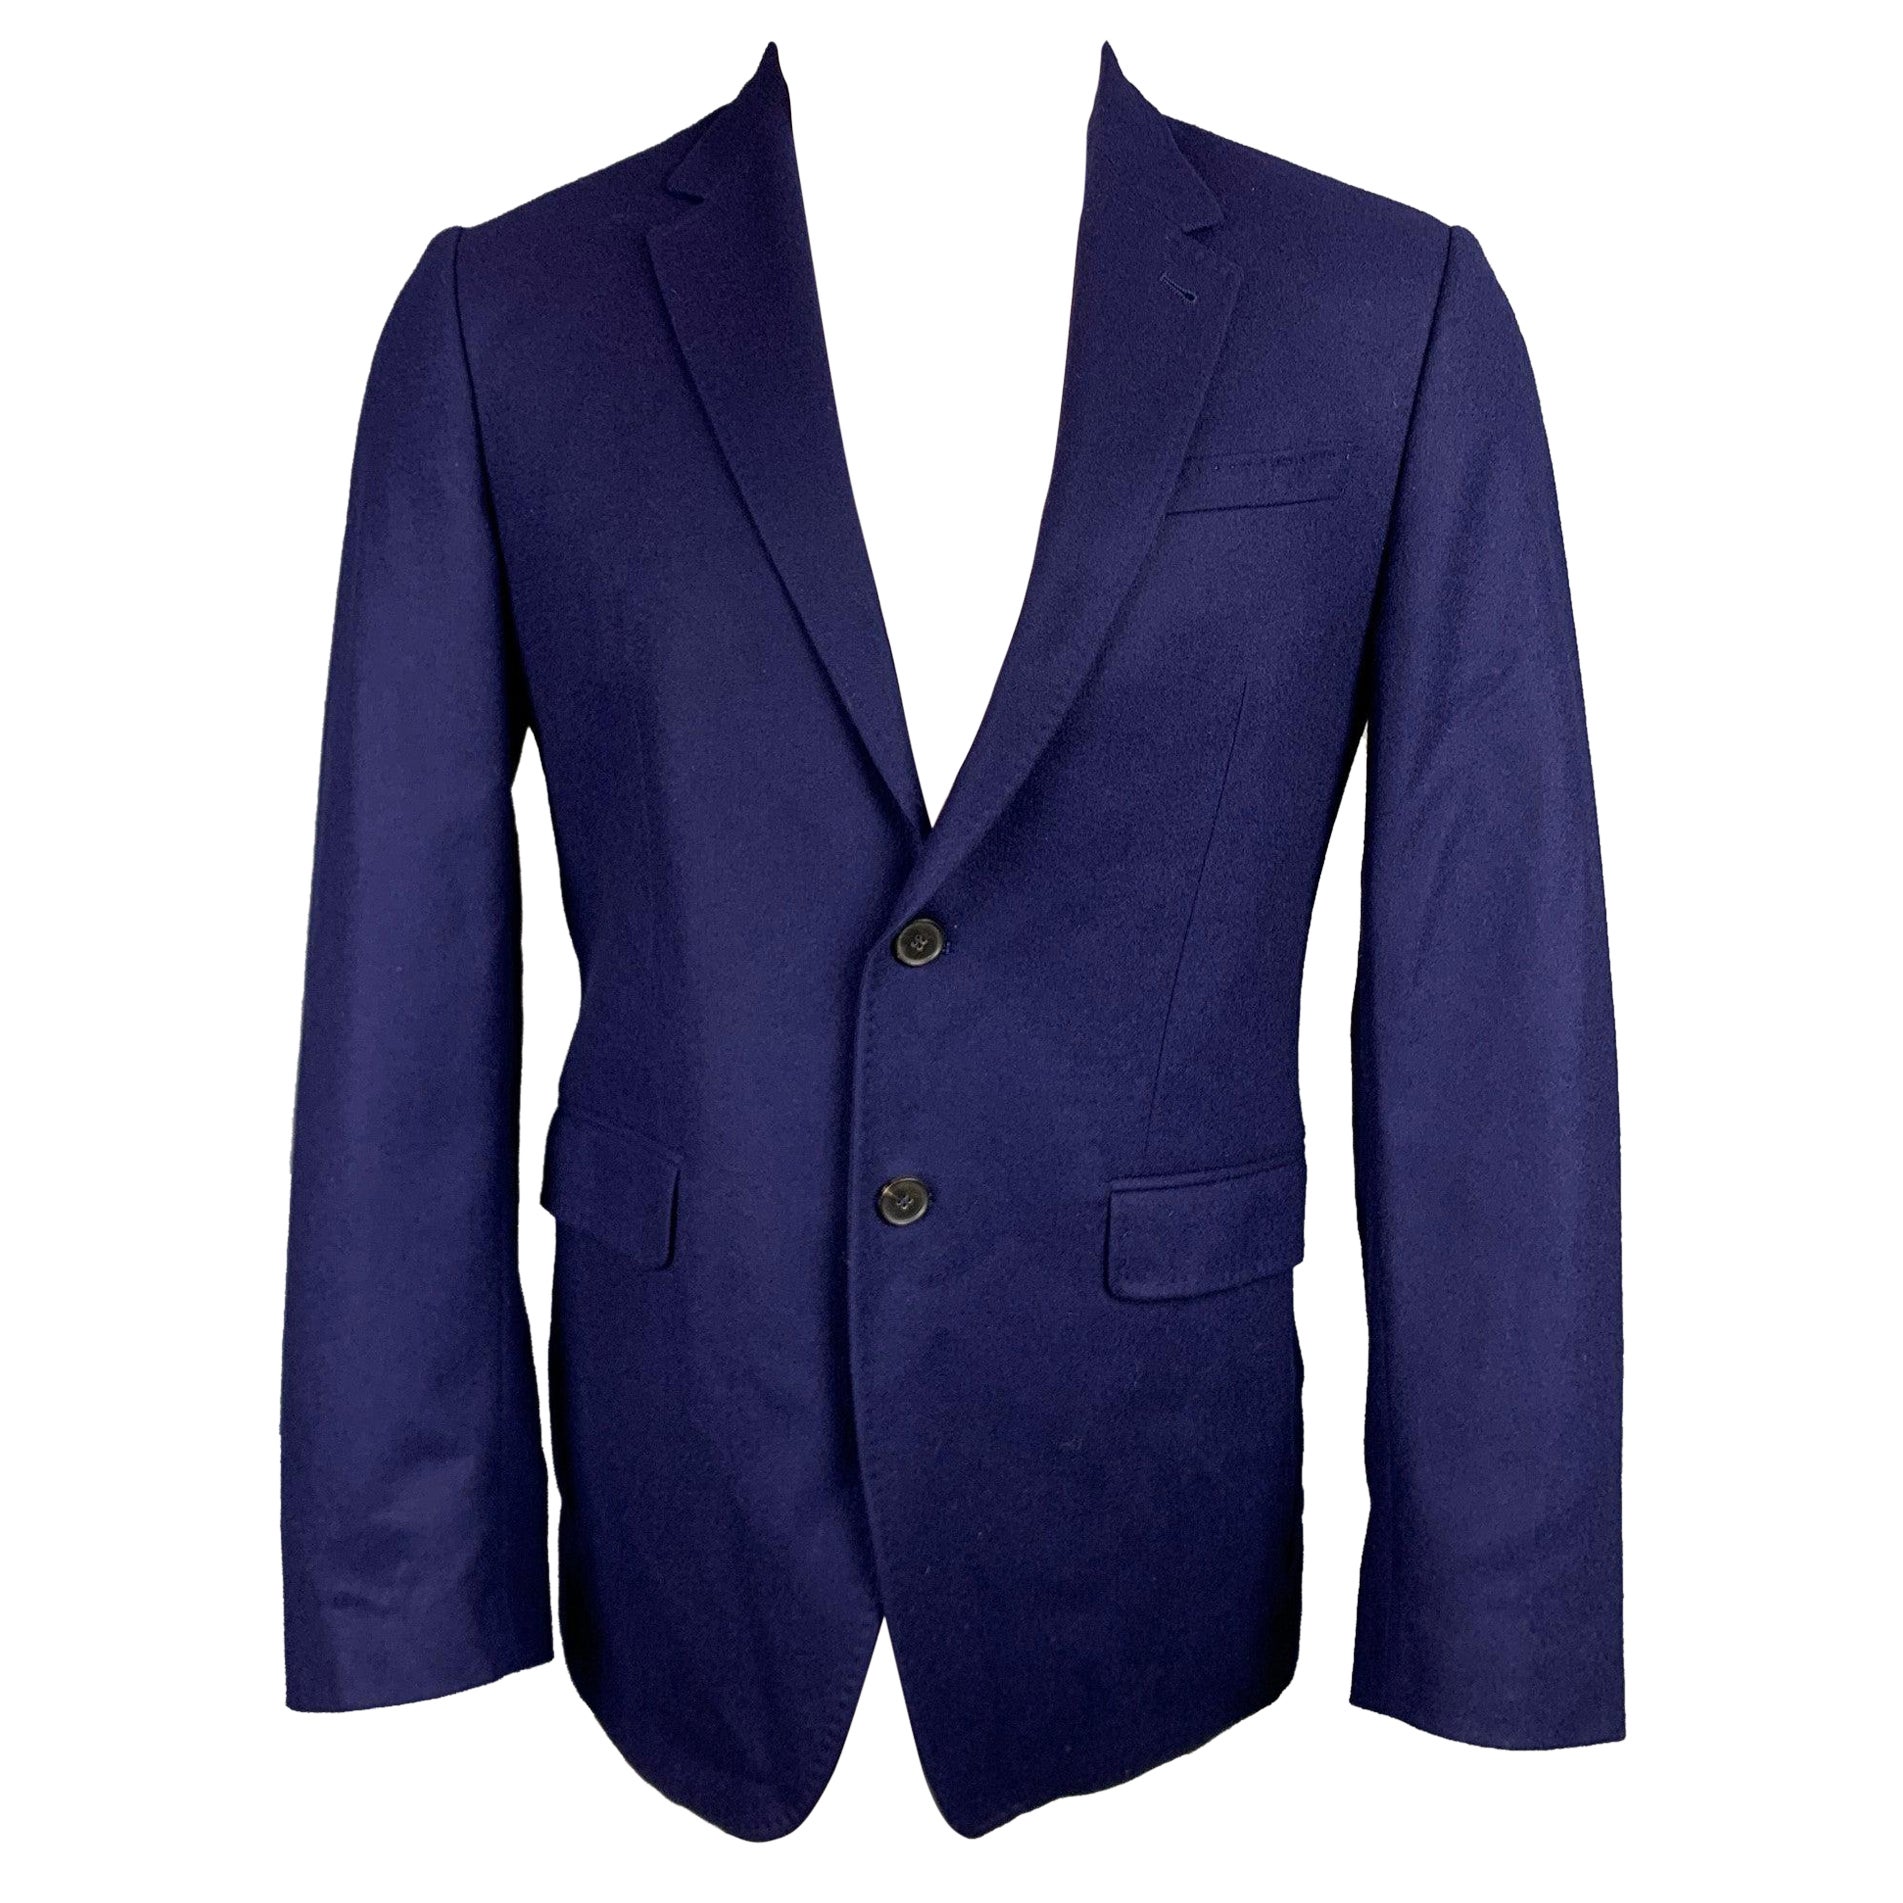 PAUL SMITH The Byard Size 38 Purple Wool Notch Lapel Sport Coat For Sale